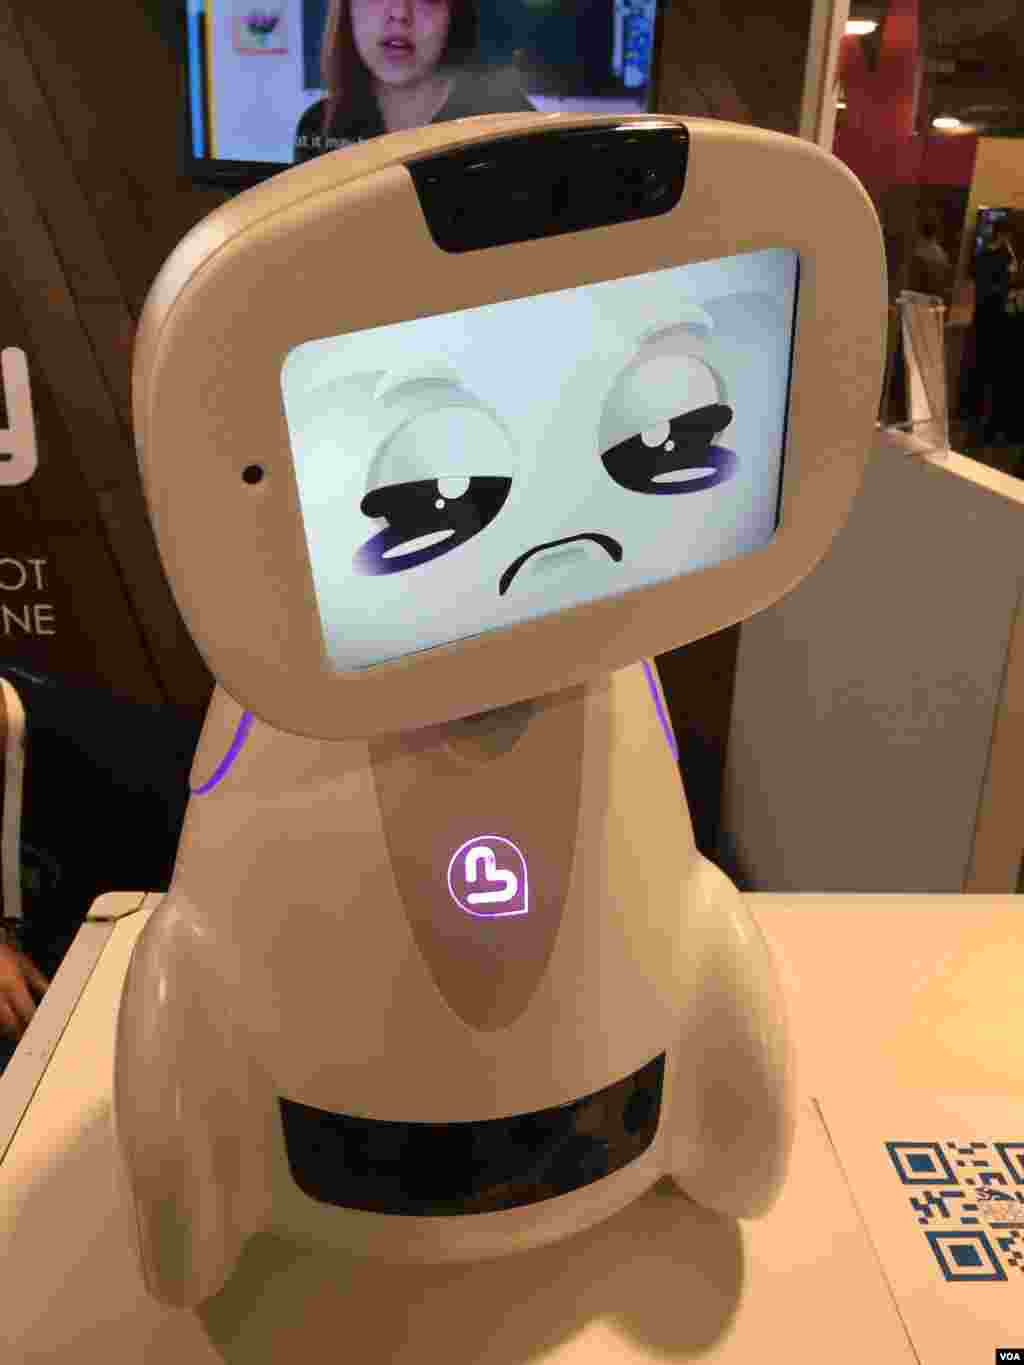 از بزرگترین نمایشگاه ابزار الکترونیکی مصرفی: ربات ؛بادی؛ به معنی رفیق، یک ربات خانگی متصل به اینترنت است که میتواند با بچه ها قایم باشک بازی کند و یا به آنها ریاضی درس دهد. گزارشهای بیشتر درباره نوآوری های این نمایشگاه را اینجا پی بگیرید.